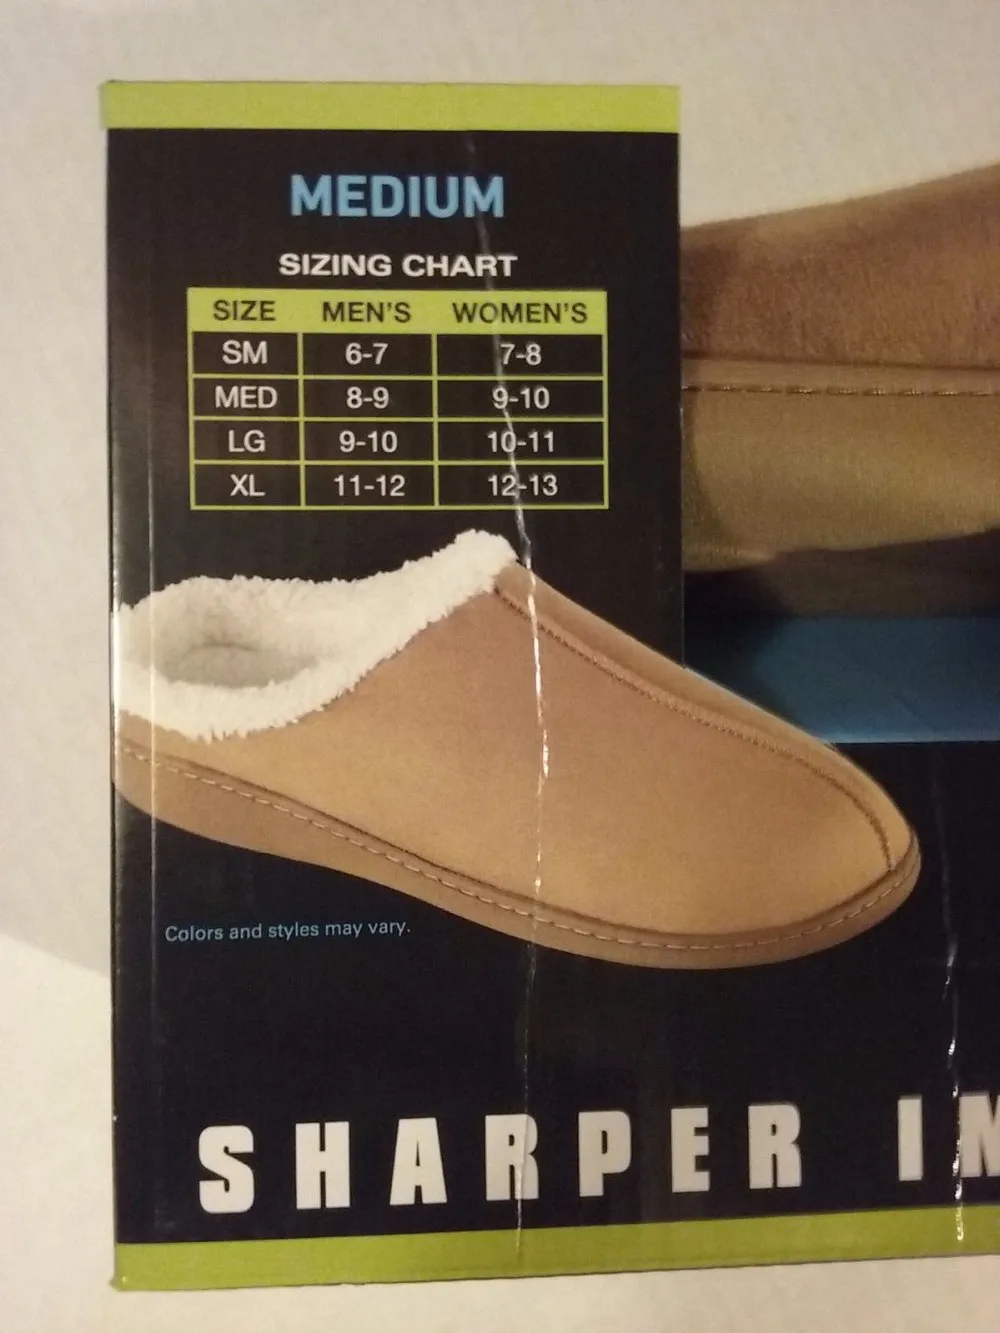 Med 8-9 Sharper Image Men's Memory Foam Slippers Size Small 6-7 XL 11-12 